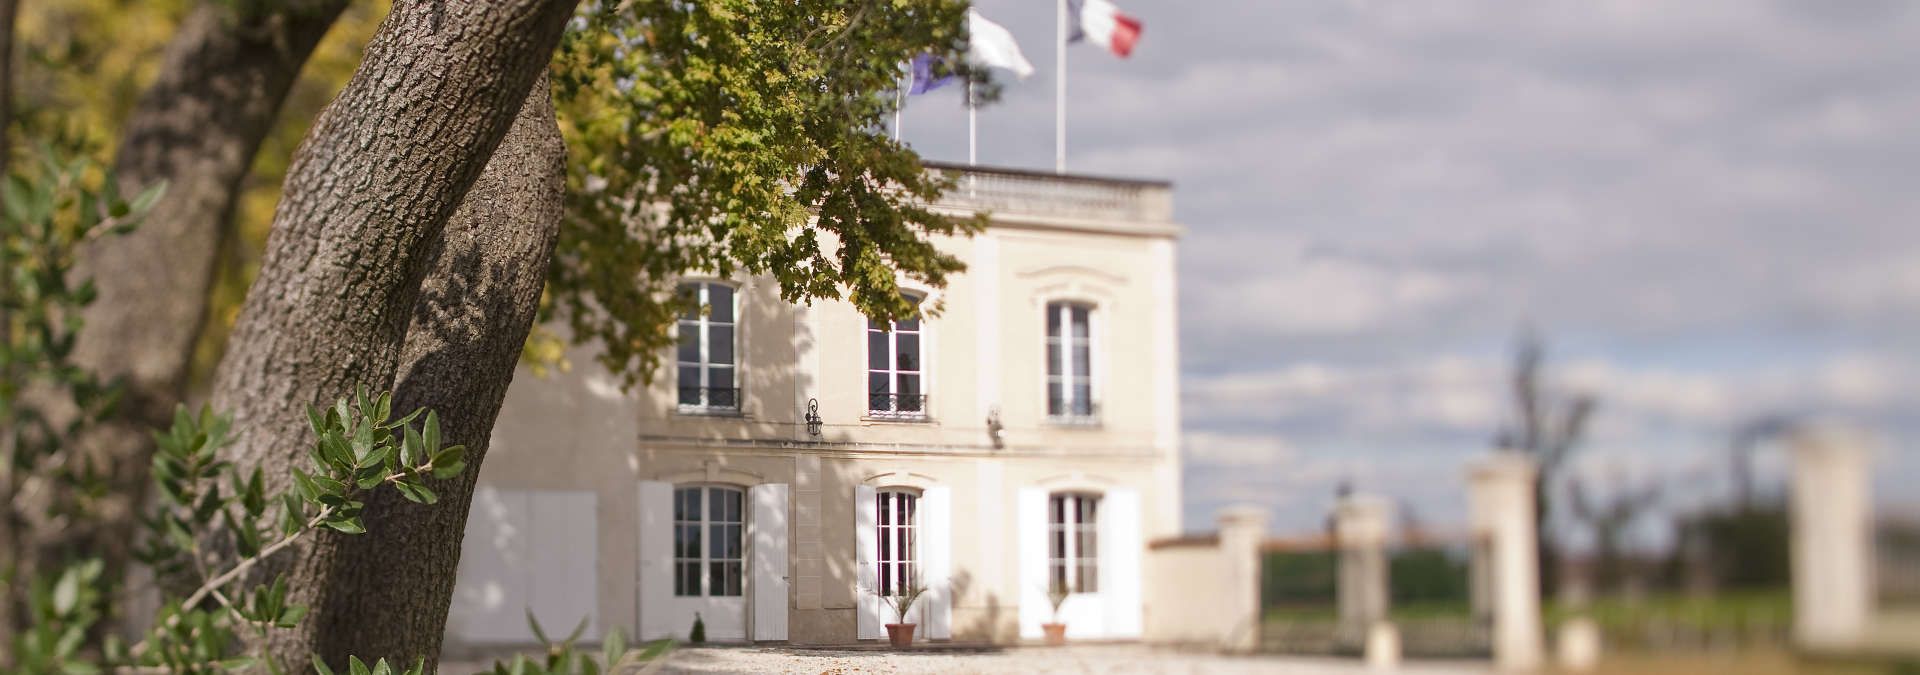 Château Marquis de Terme - Rue des Vignerons